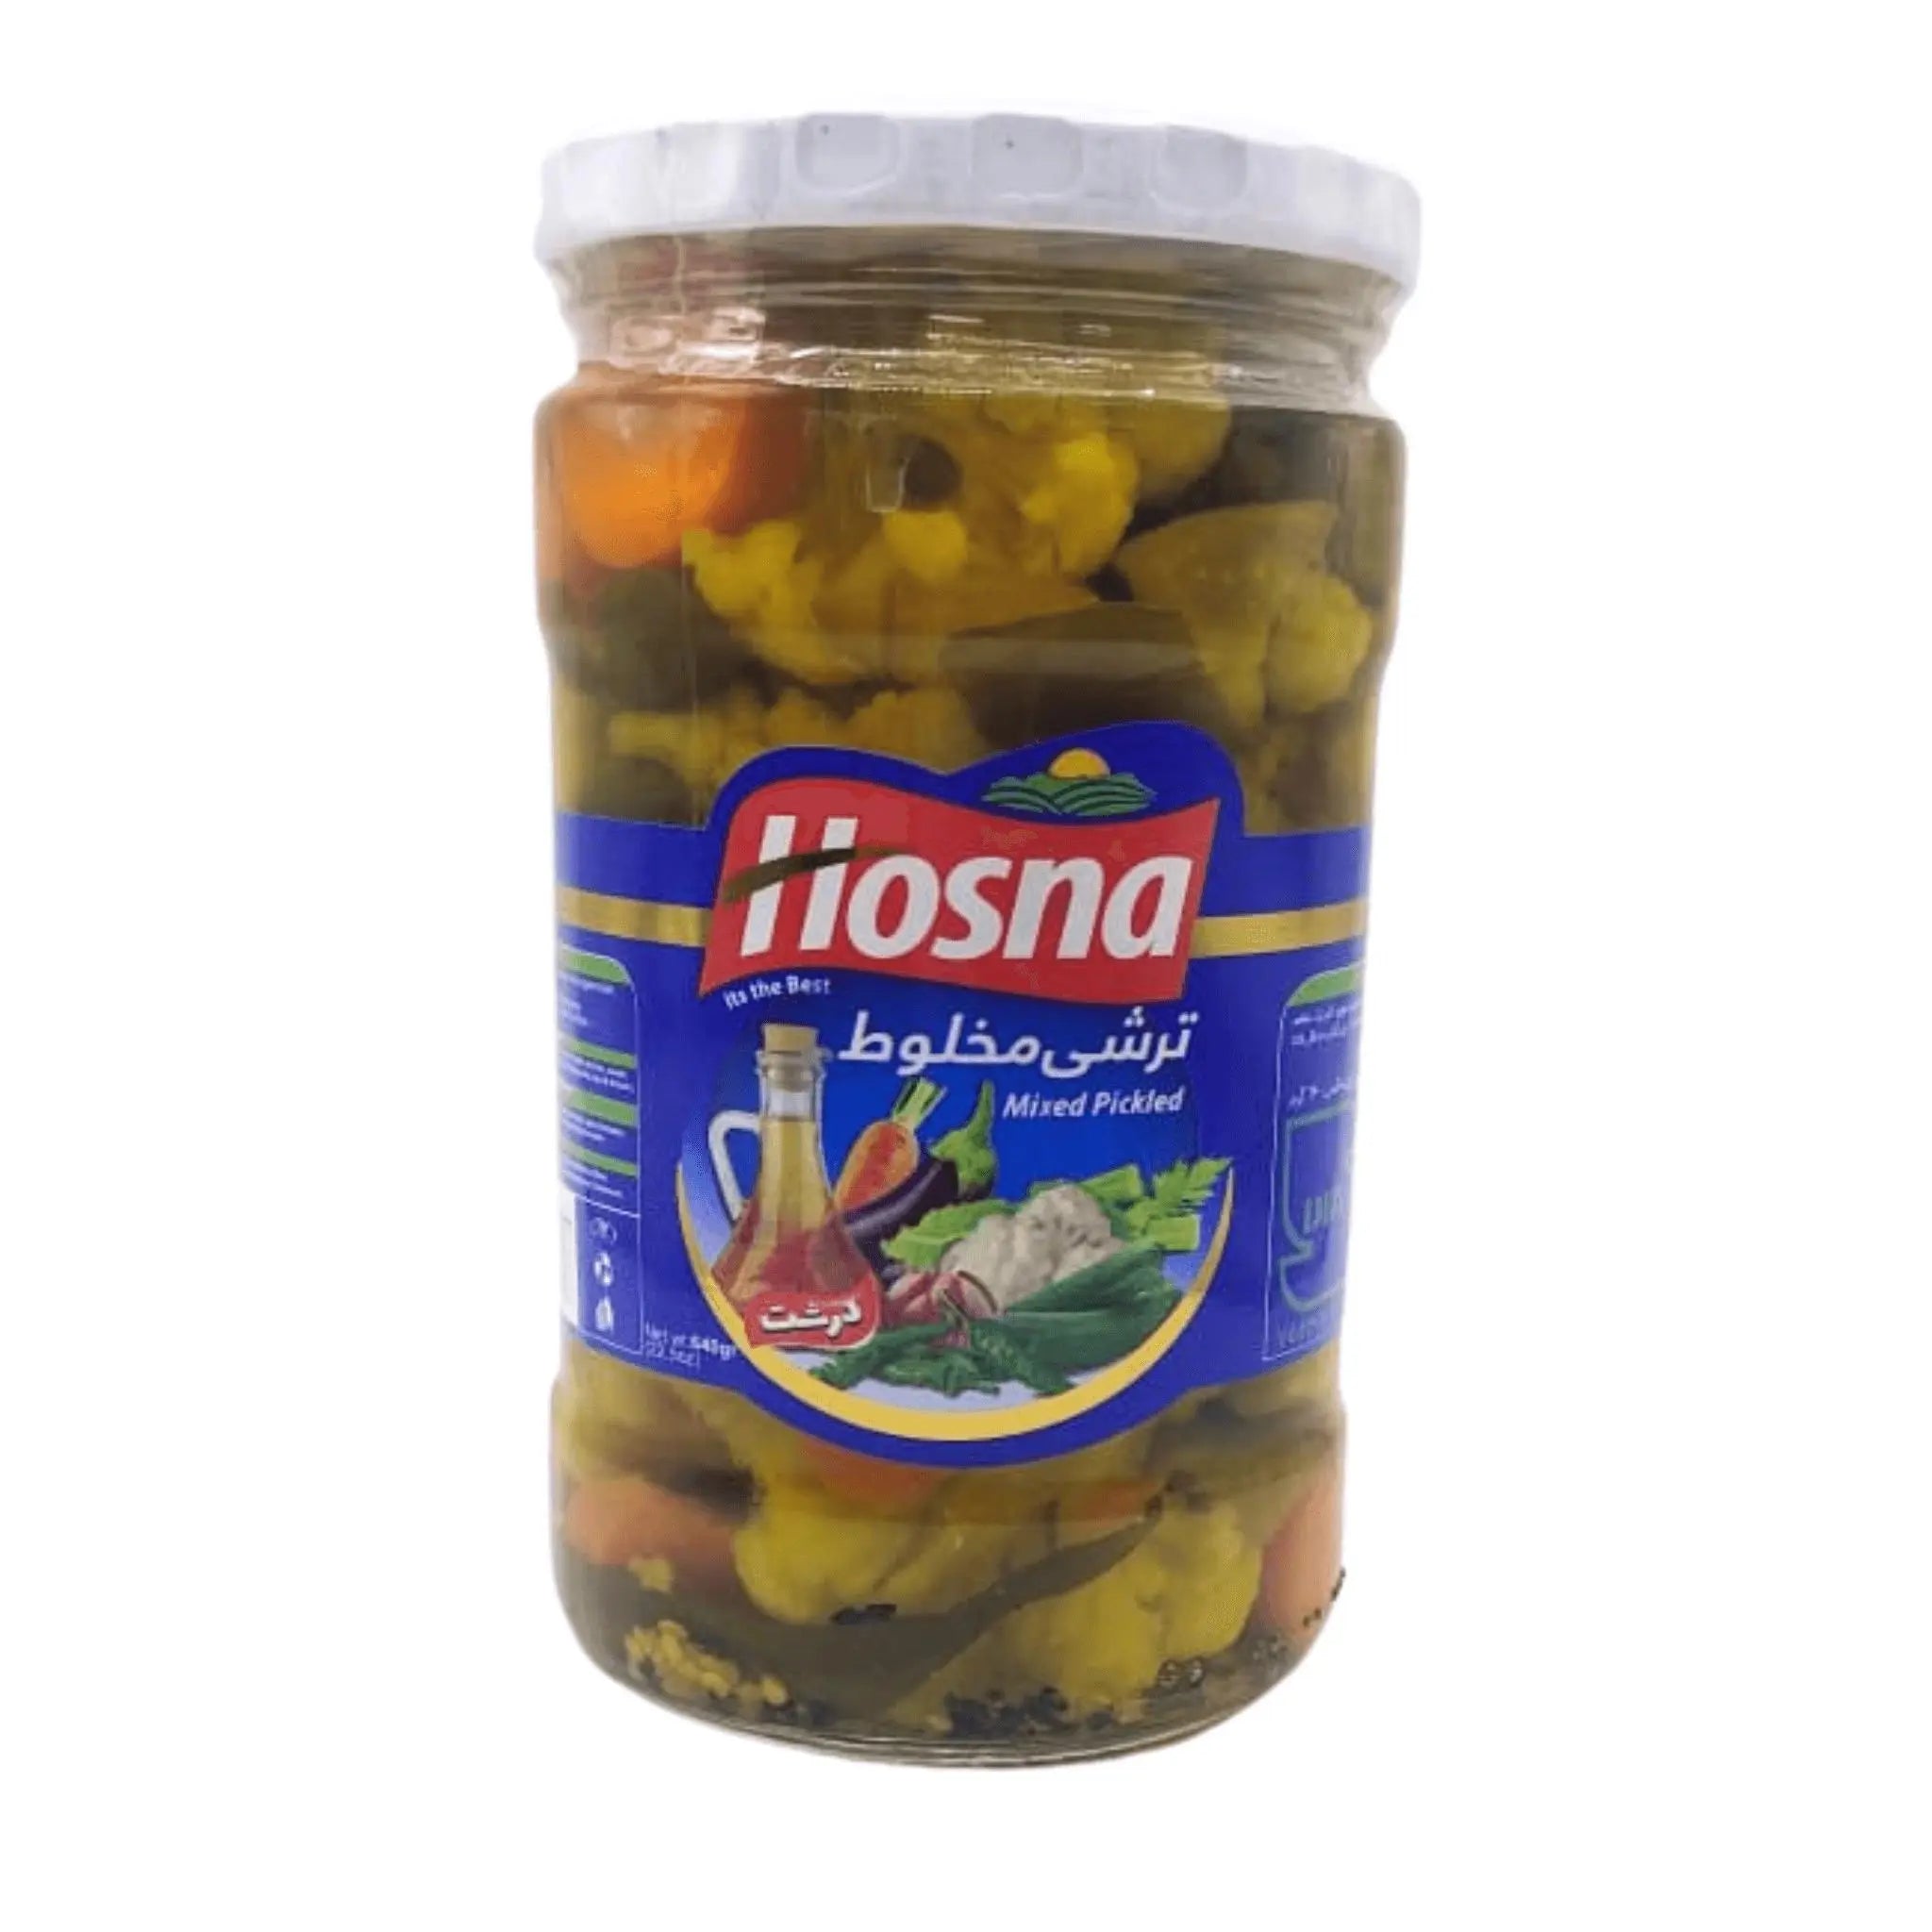 HOSNA Mixed pickled 660gx12 (1 carton) - Marino.AE